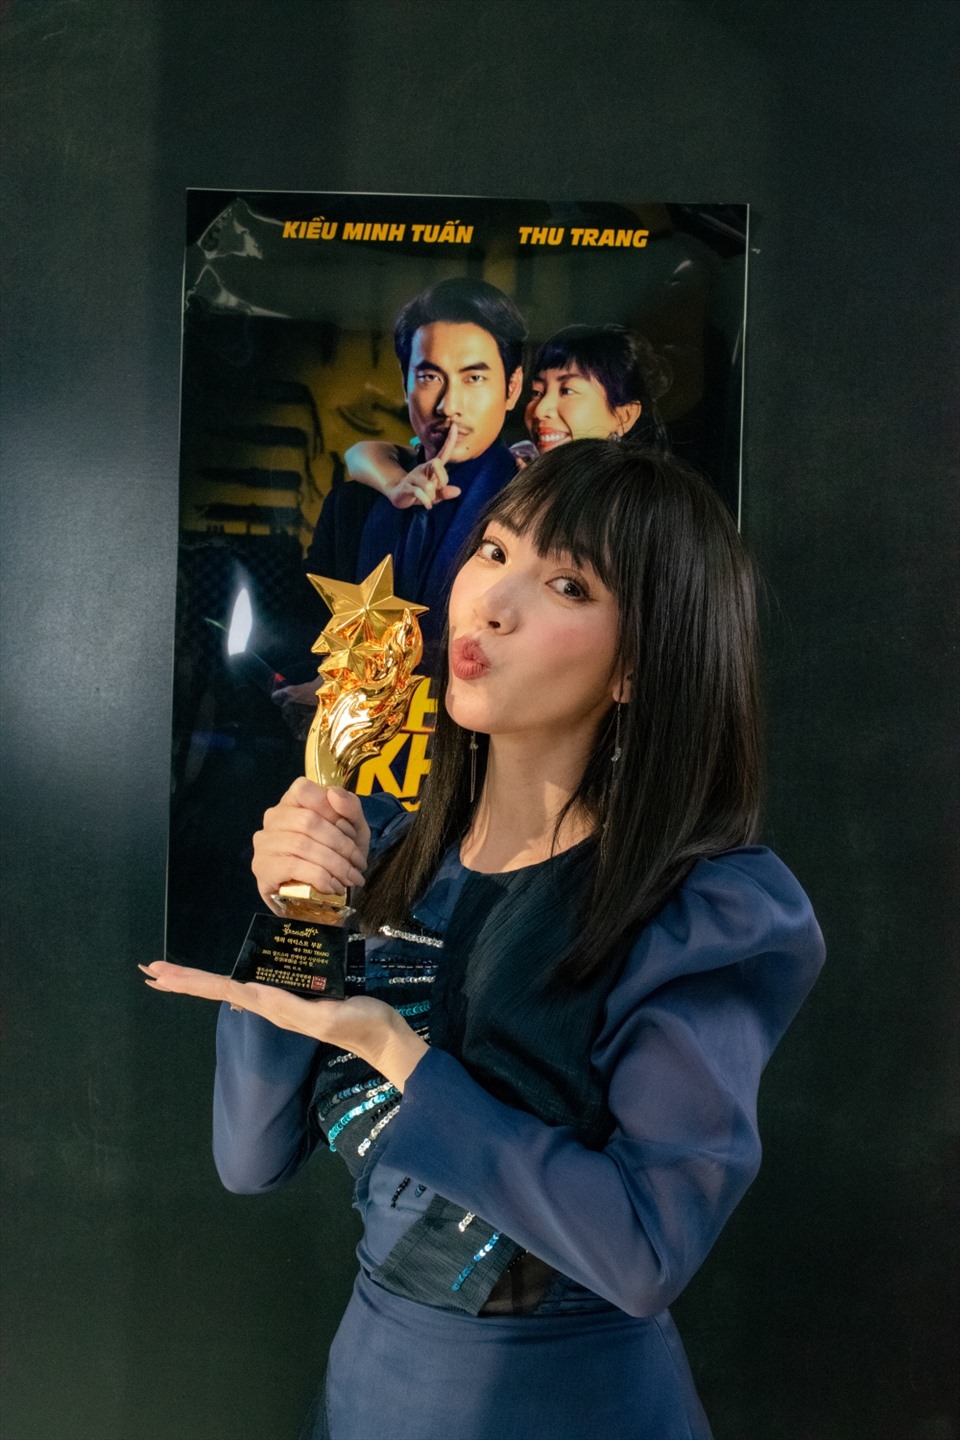 Ngoài diễn viên Xuân Nghị, diễn viên hài Thu Trang cũng nhận được giải thưởng “Nữ diễn viên quốc tế xuất sắc“. Ảnh: NVCC.